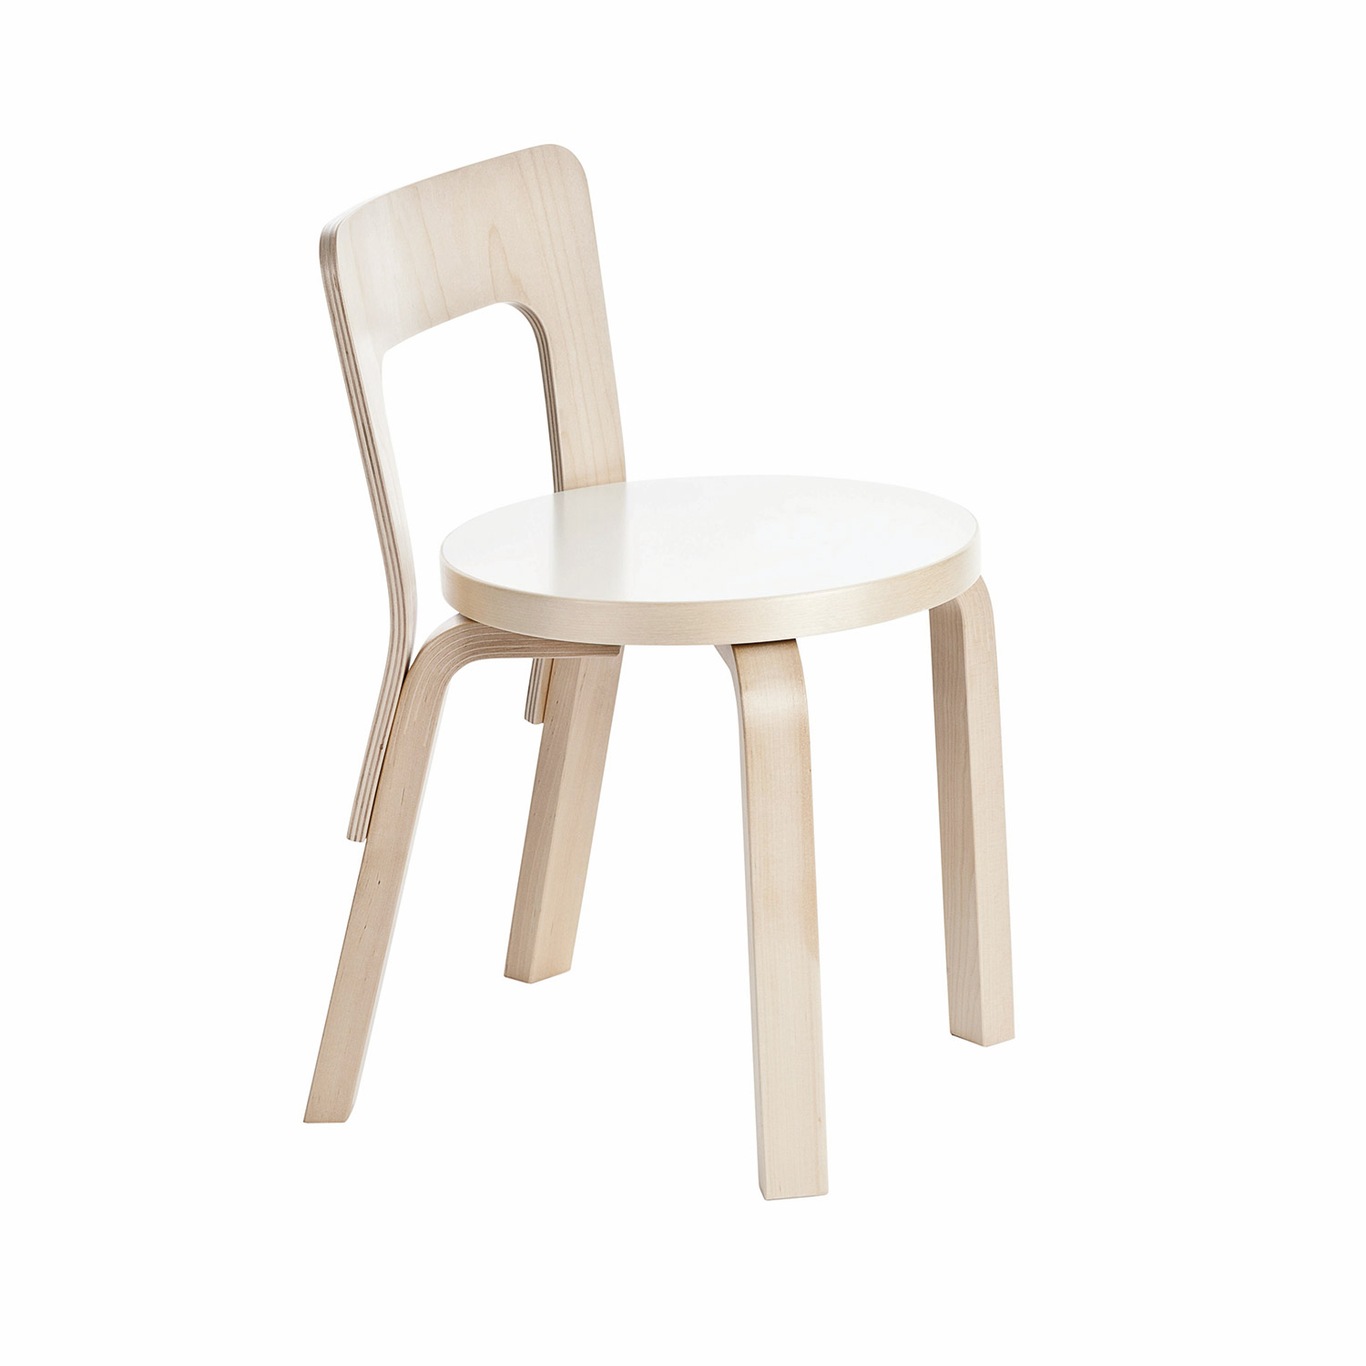 N65 Childrens Chair, White Laminate